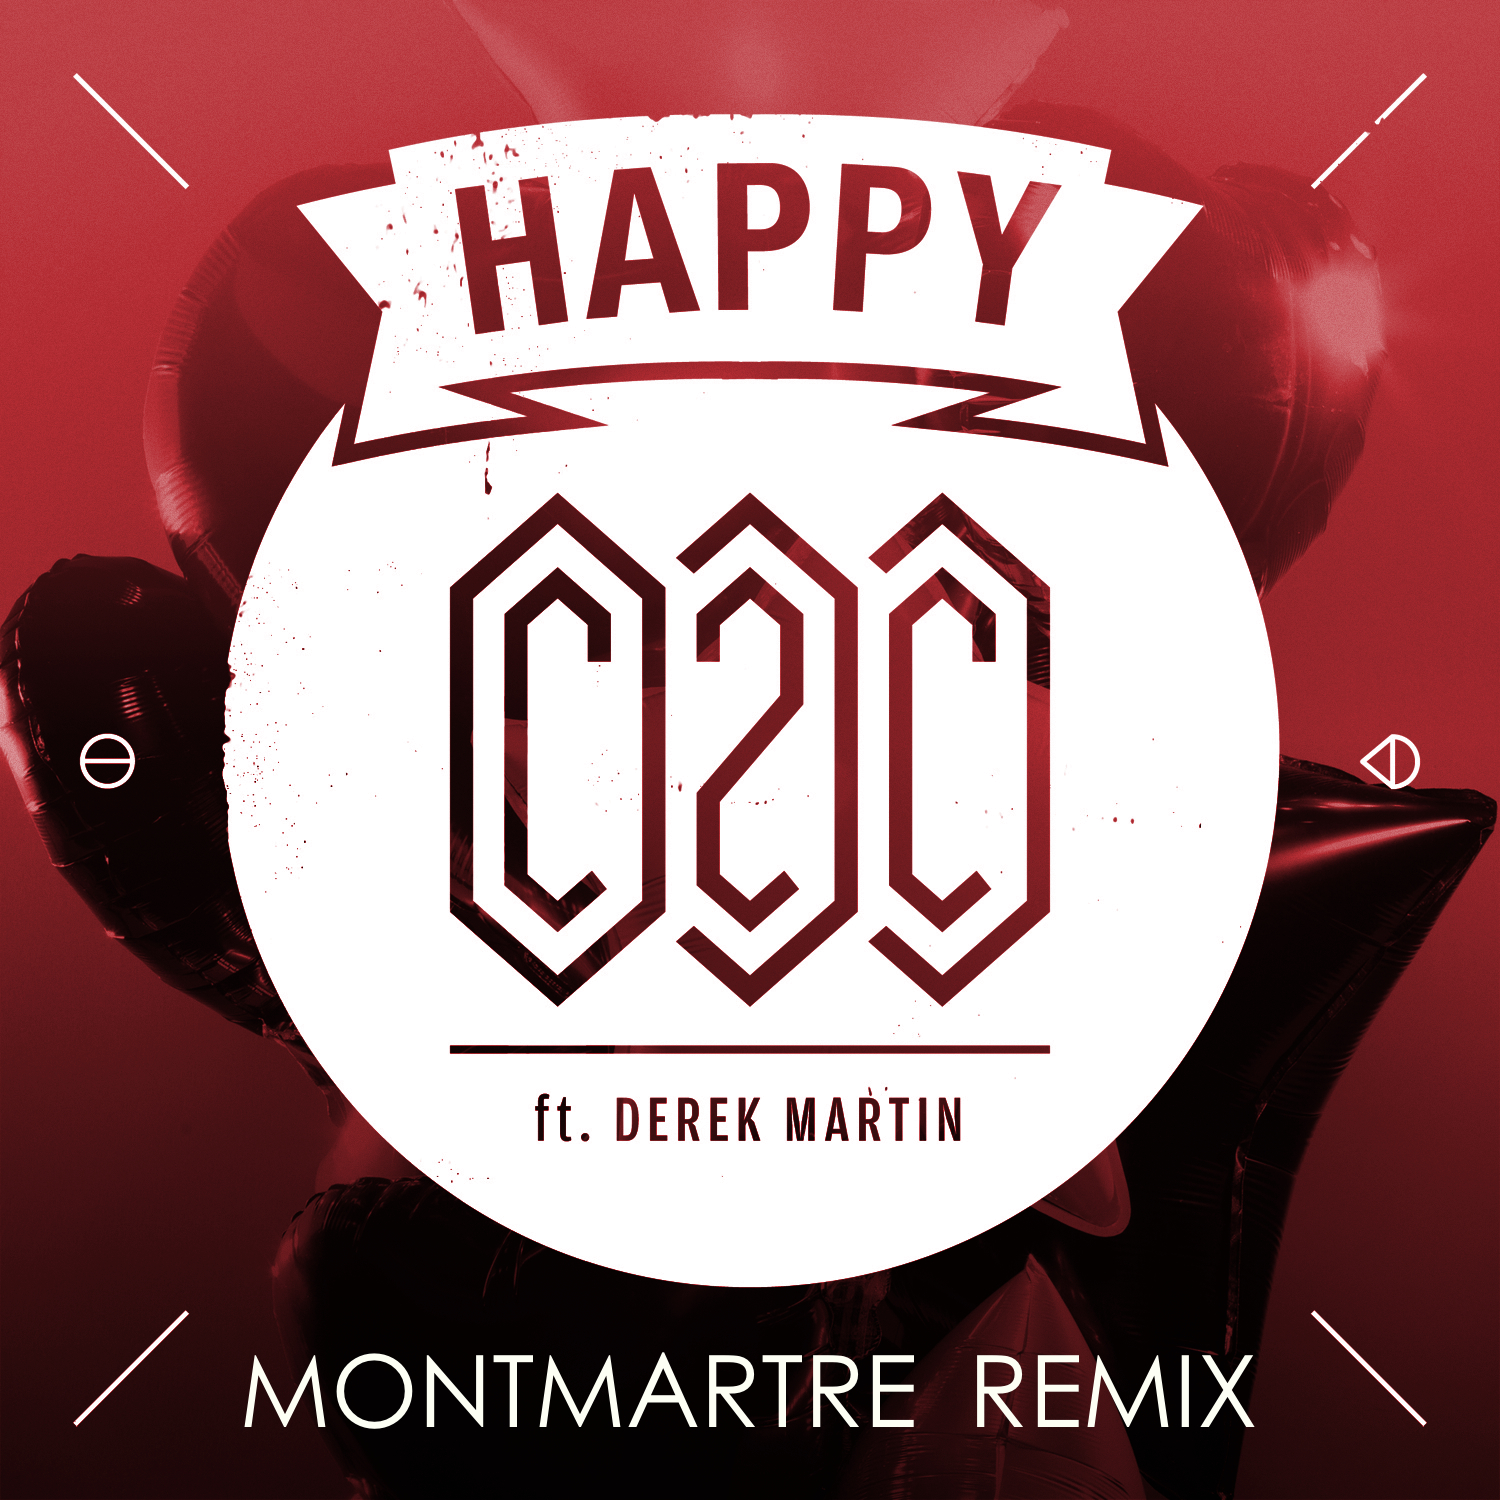 Be happy remix. Happy c2.